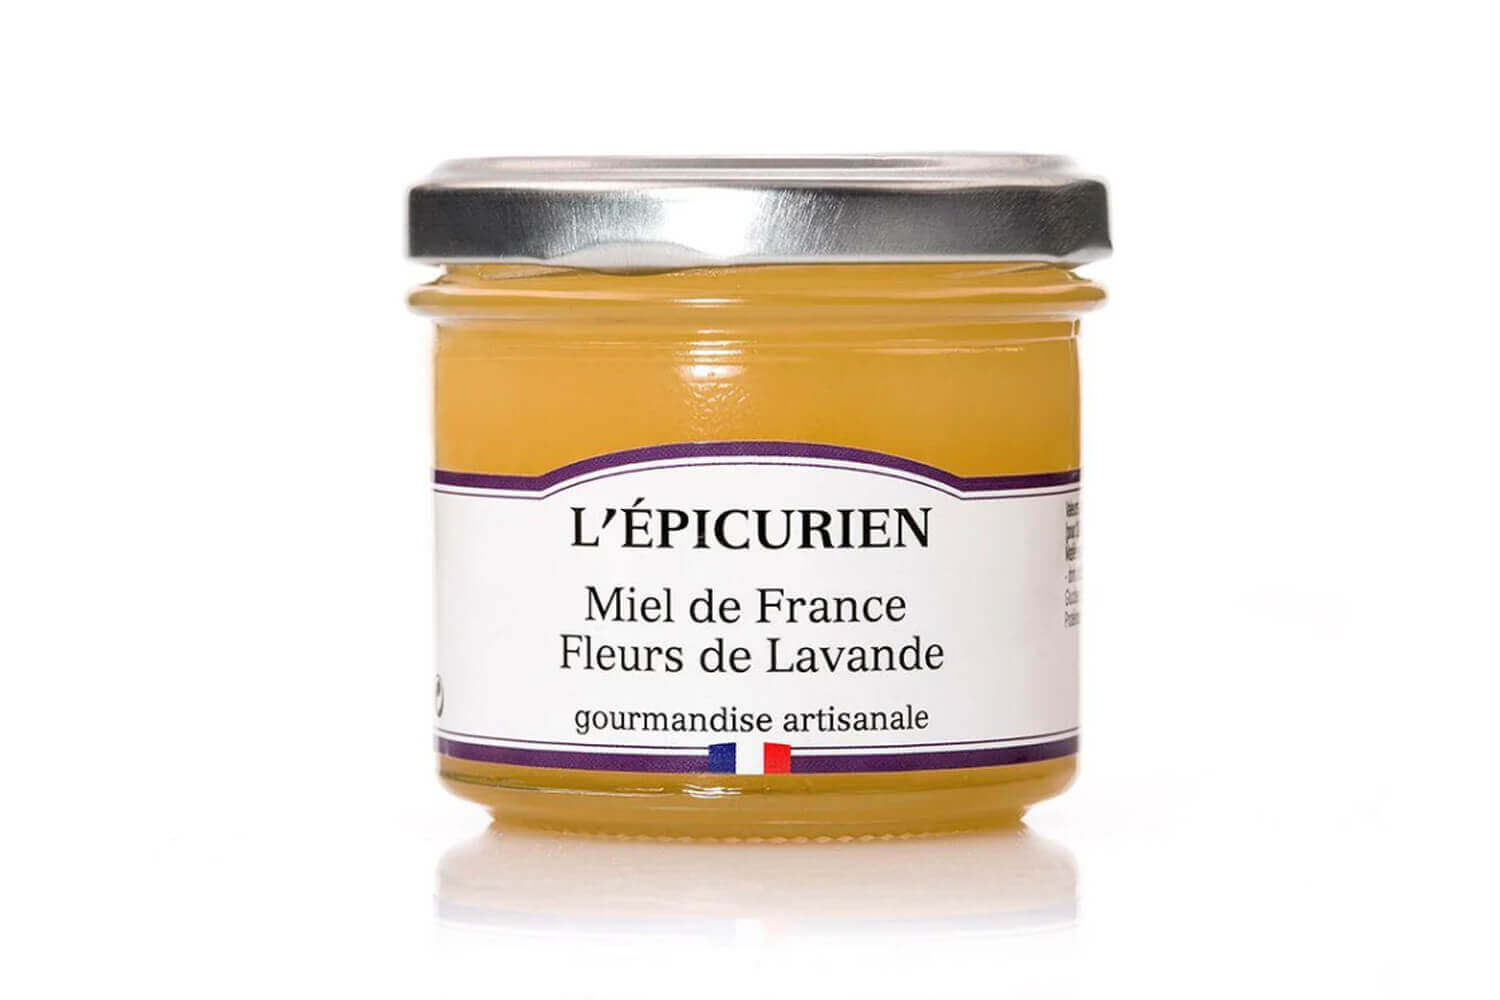 Miel fleurs de lavande artisanal français L'Epicurien